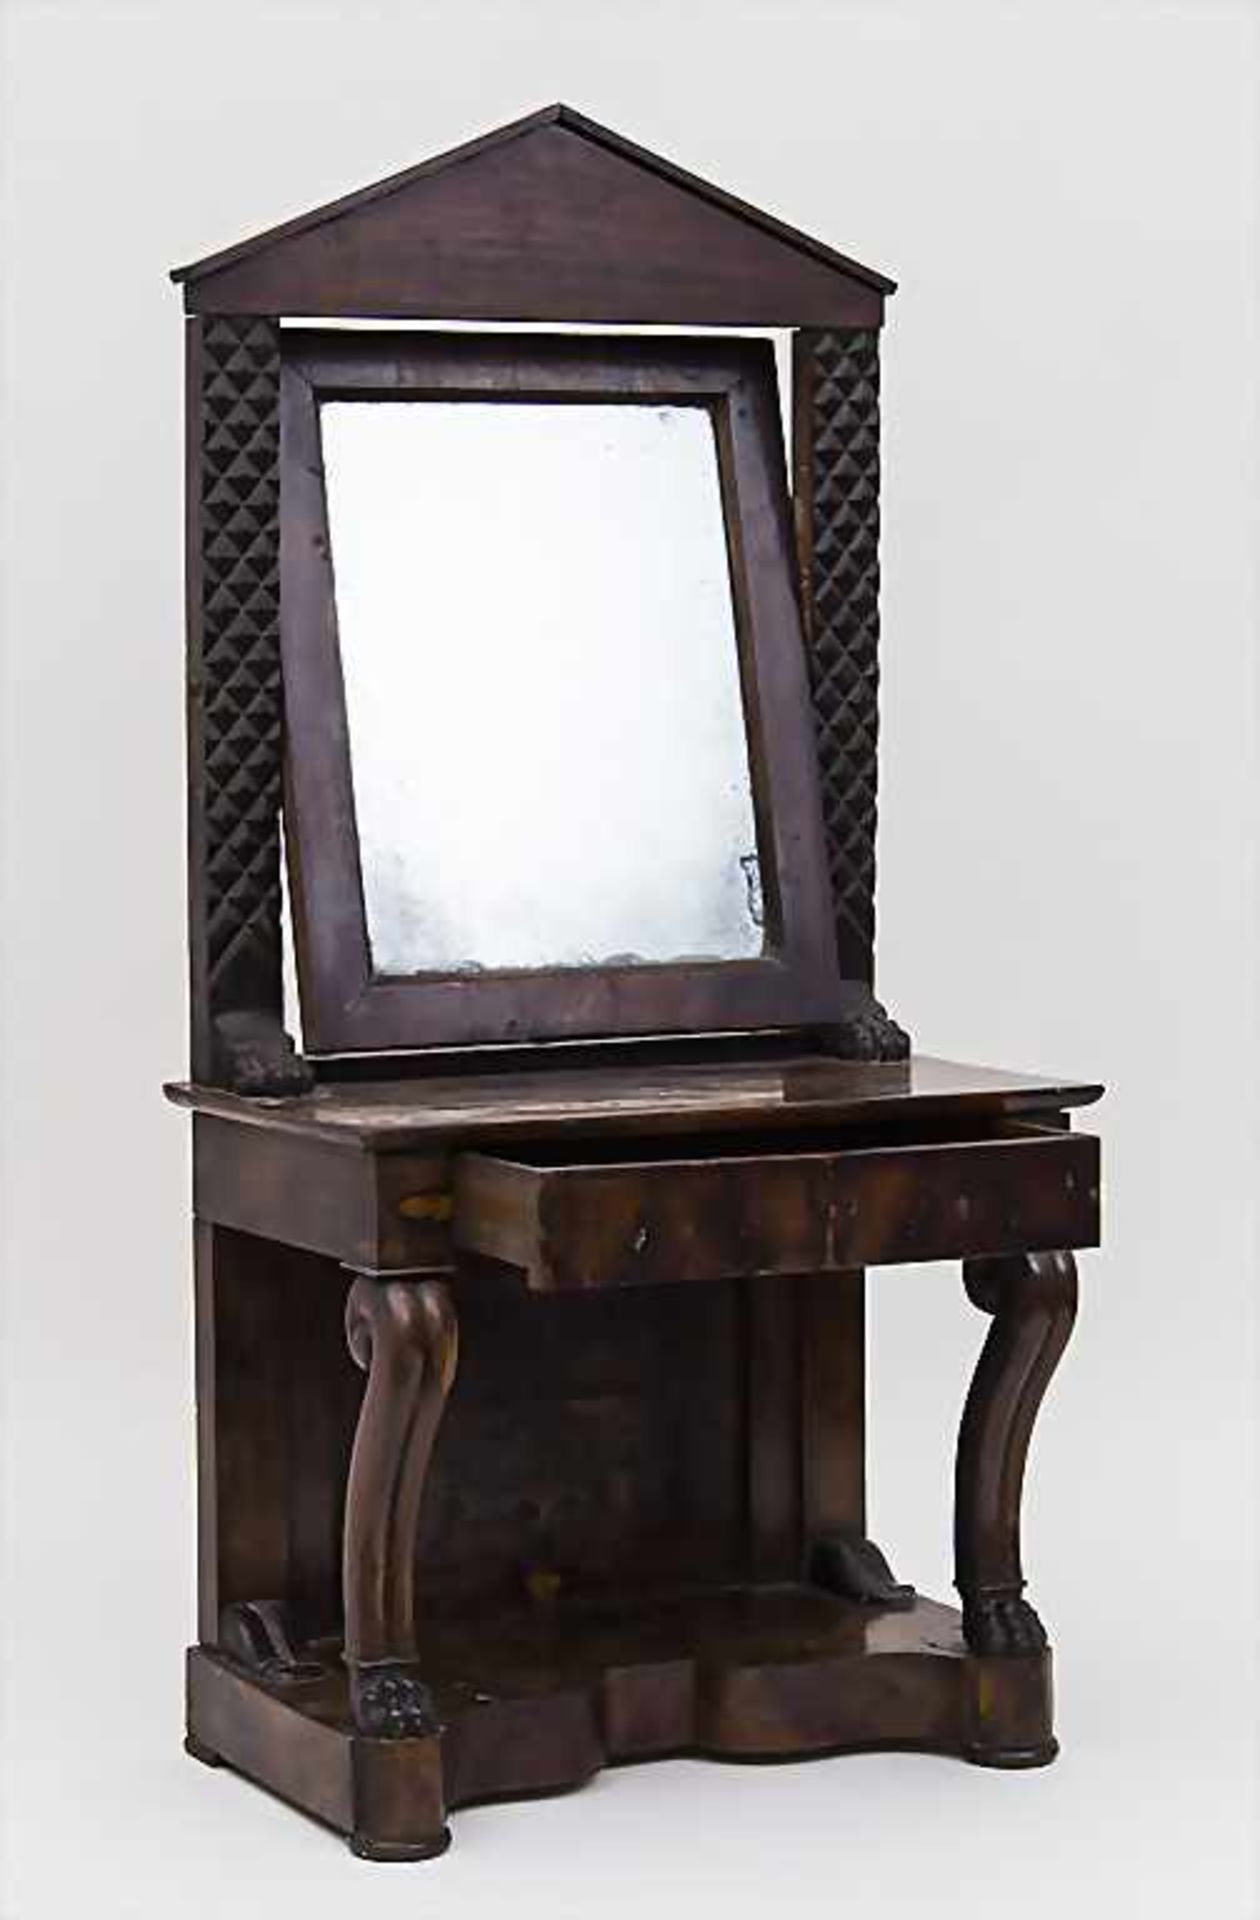 Gesellenstück Modell Spiegelkonsole mit Schublade / Journeyman's Piece Model of a Wooden Mirror